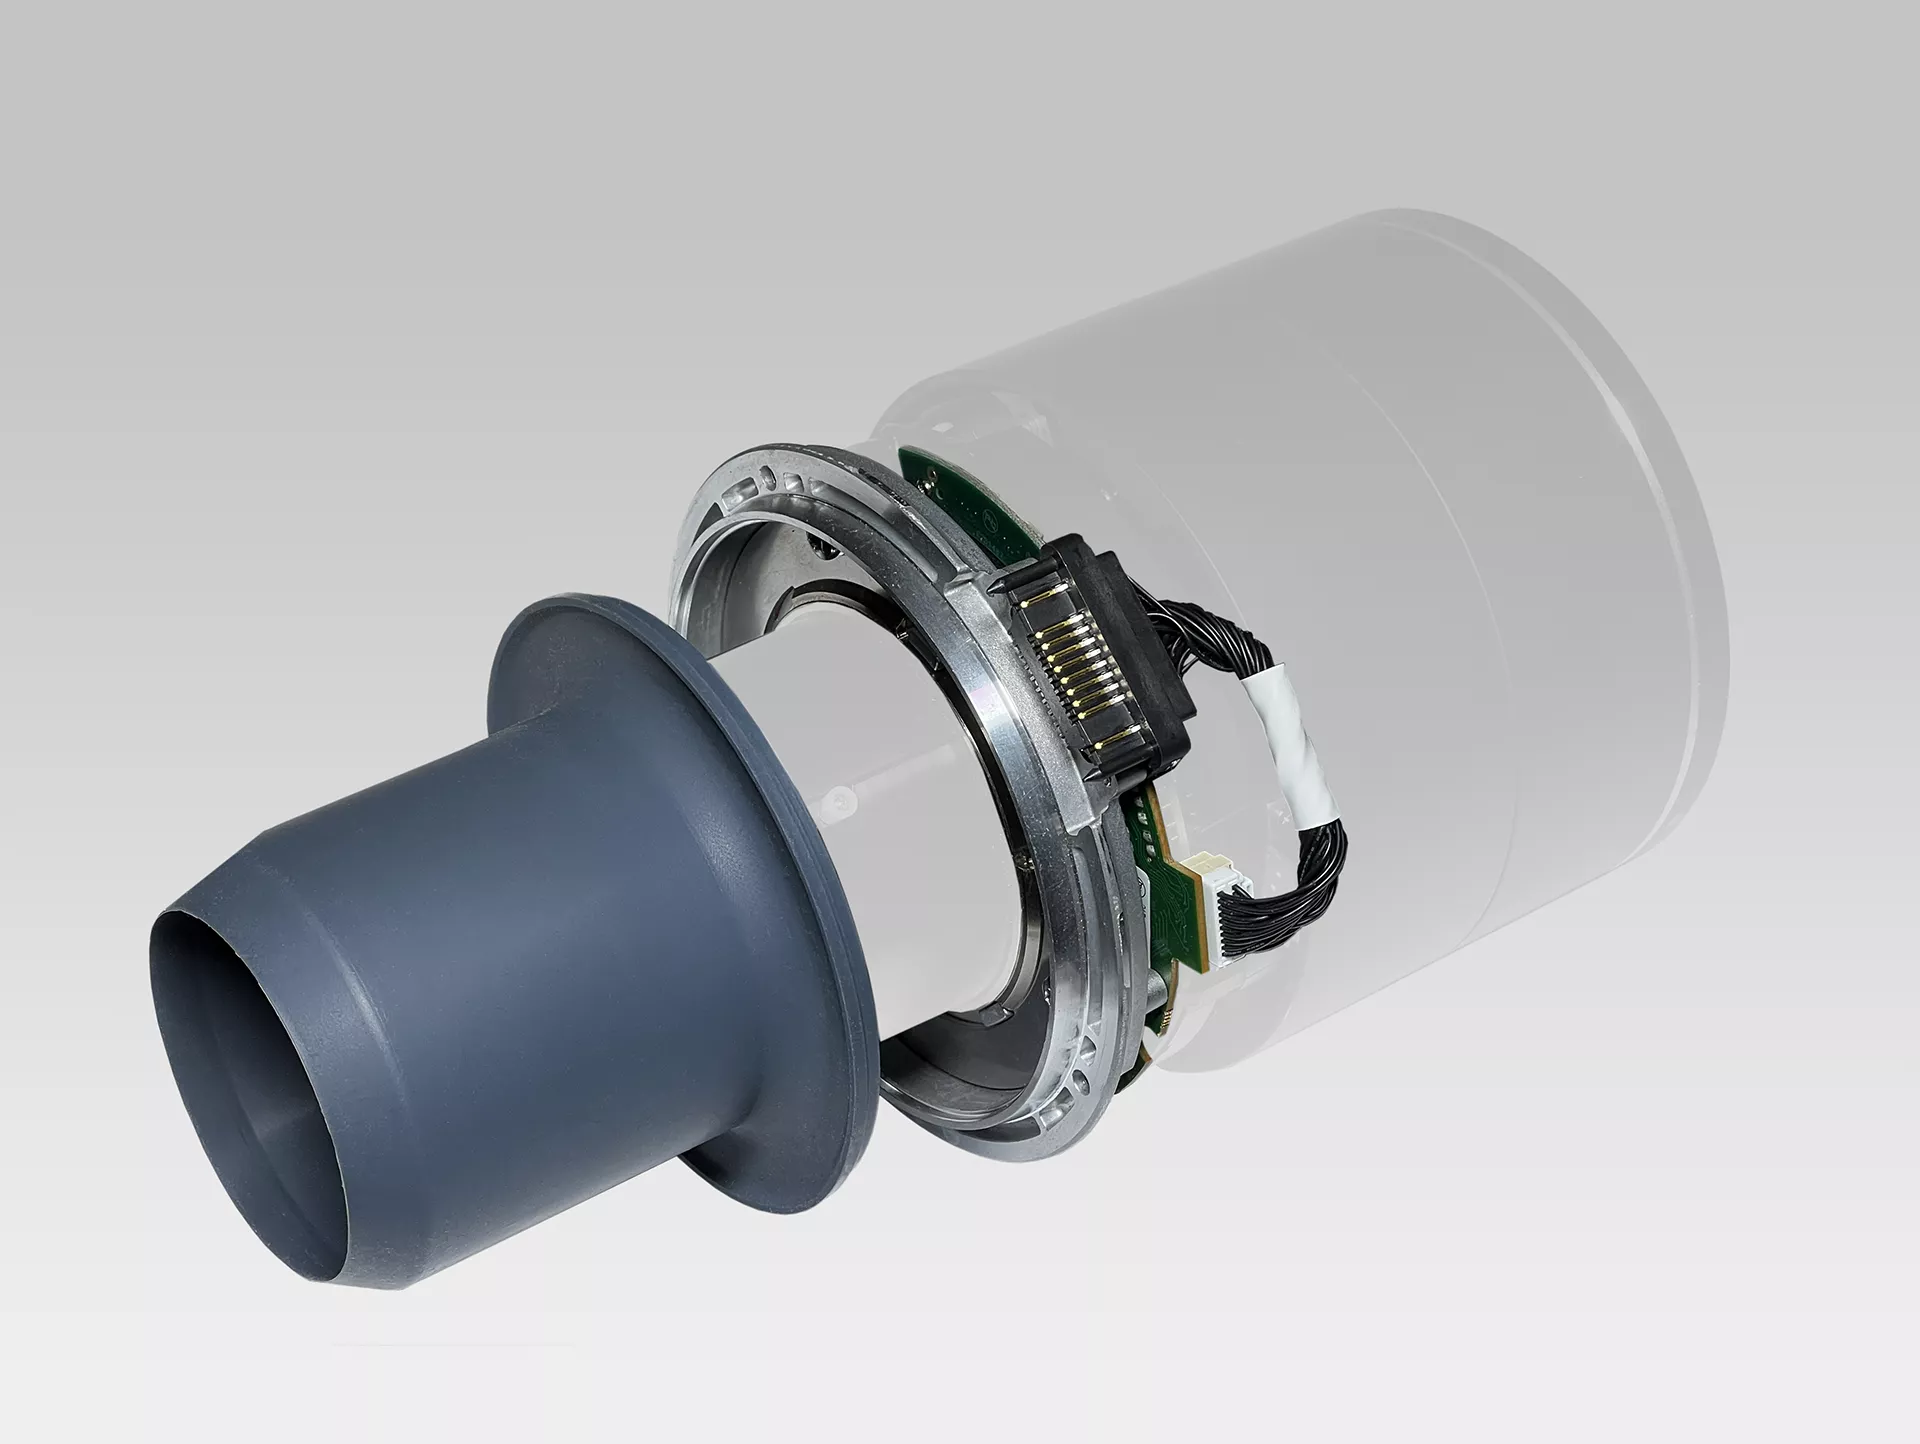 R9802623 F400 Lens Holder Adapter